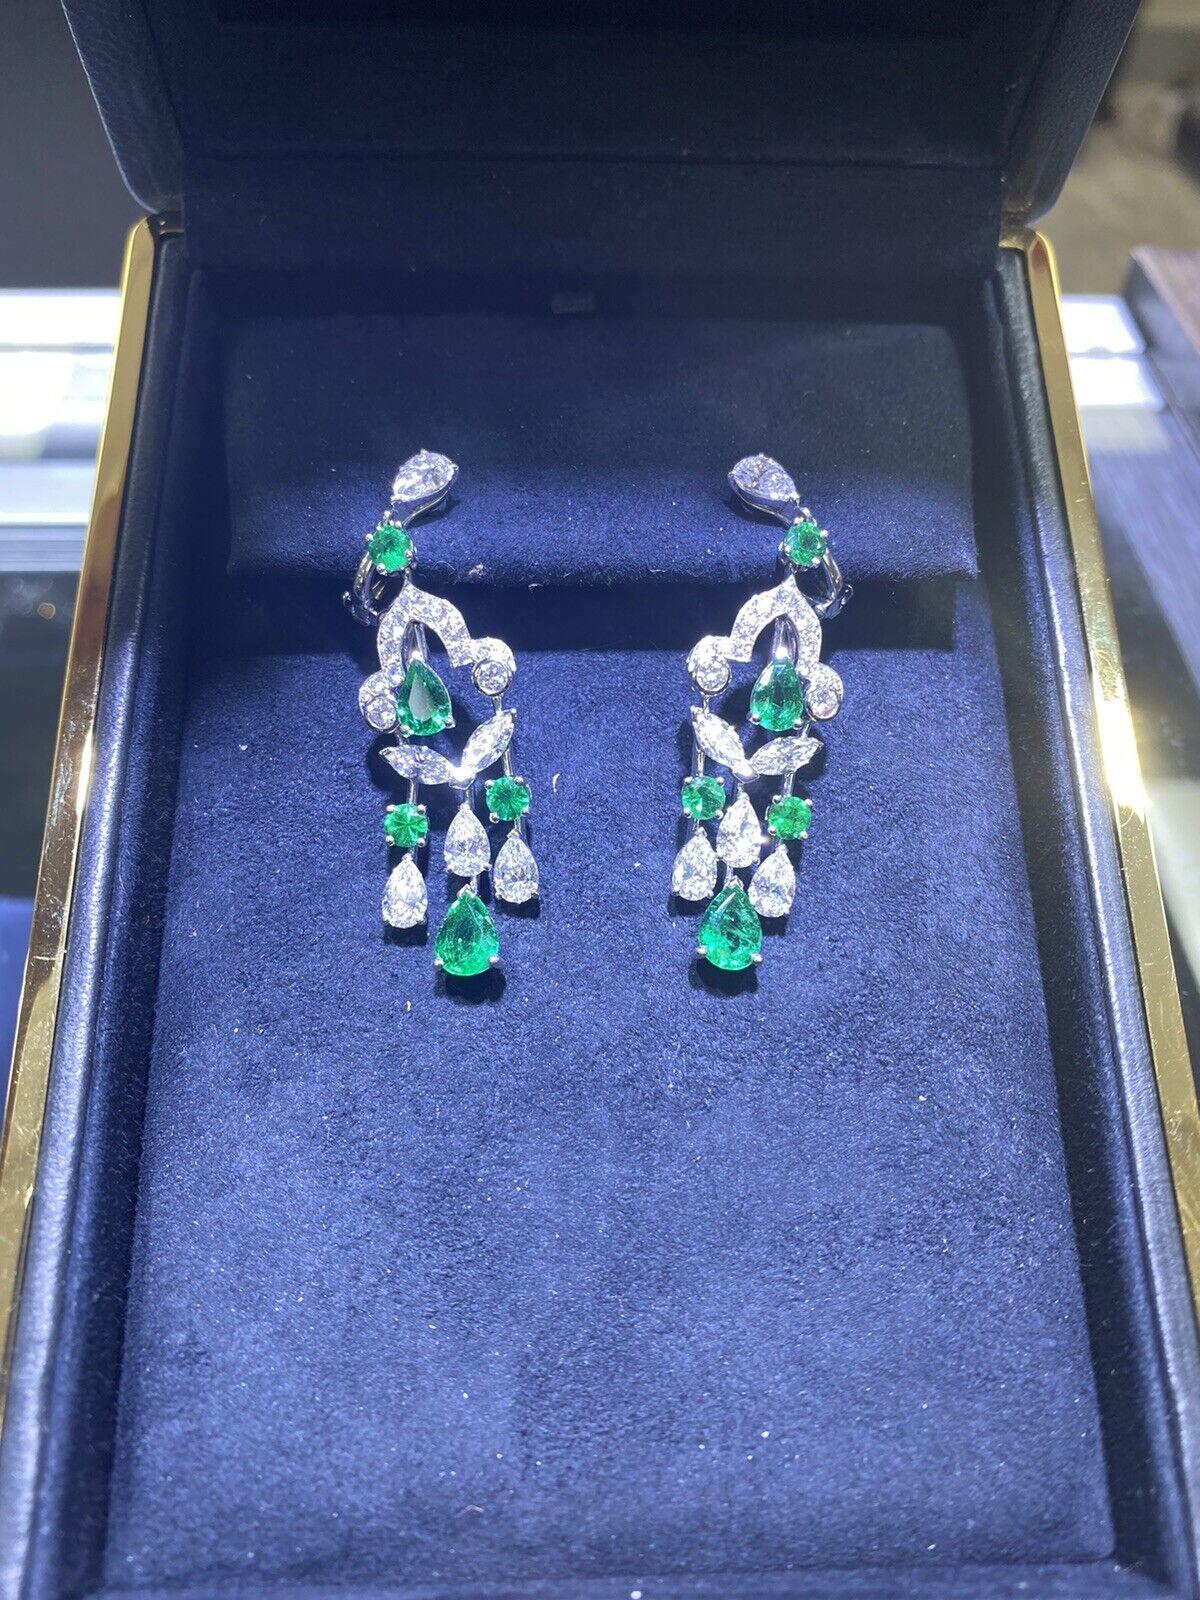 graff emerald earrings